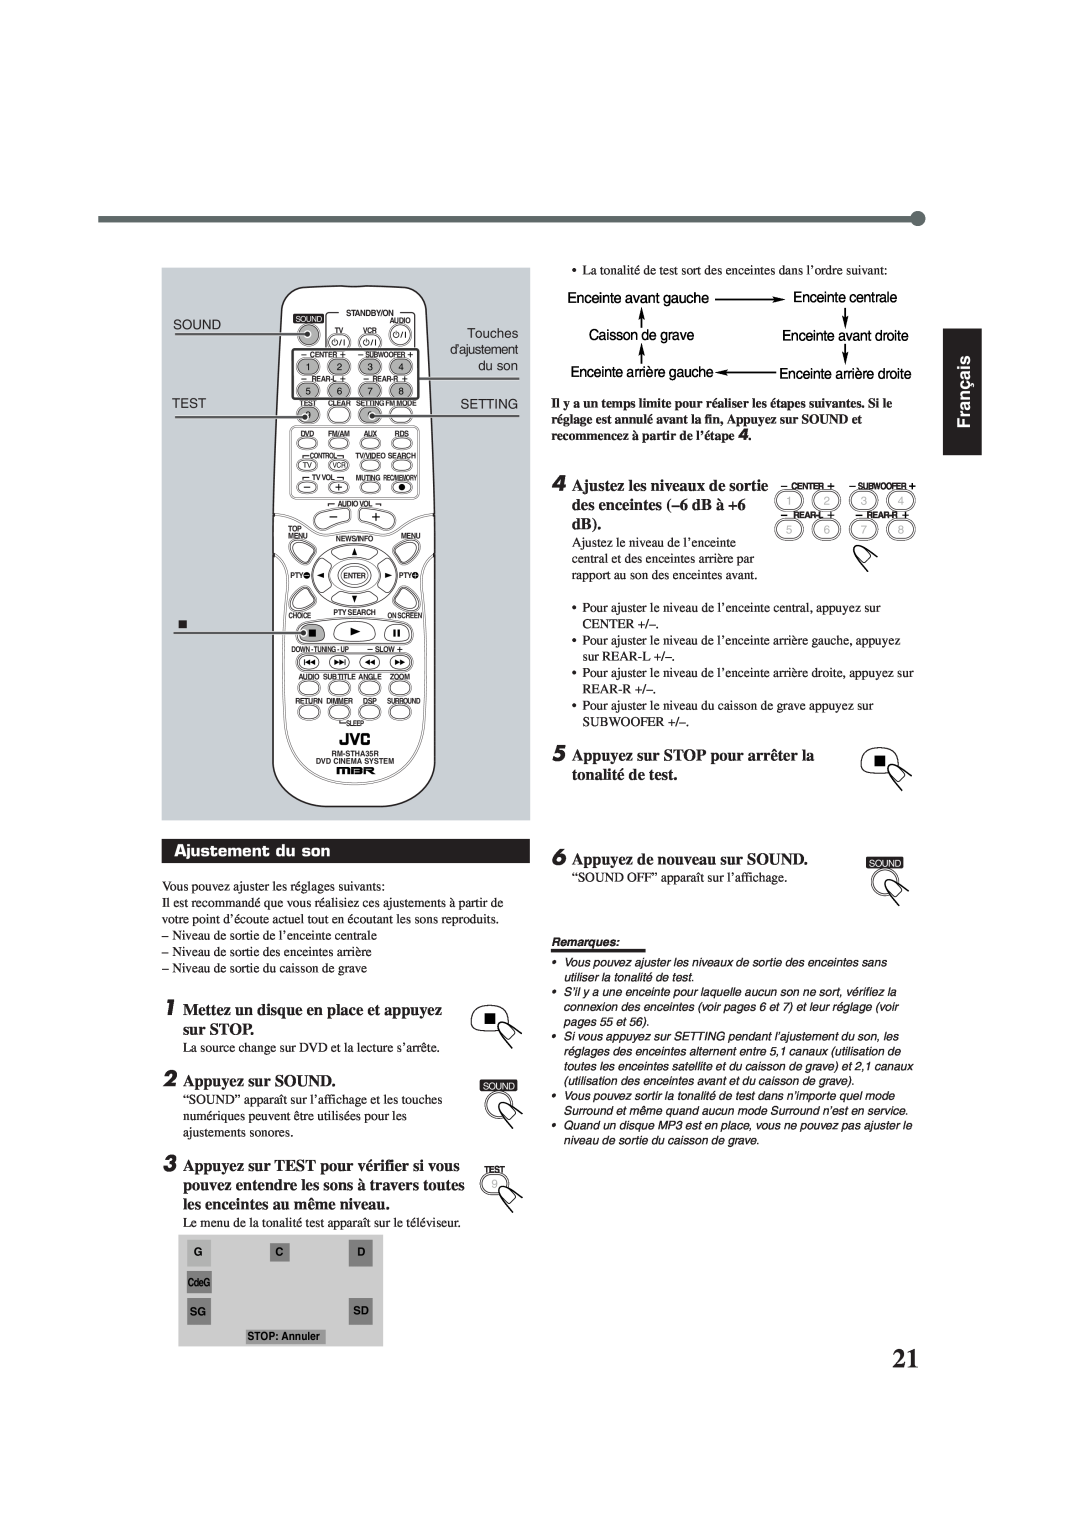 Lennox Hearth TH-A35 manual des enceintes -6dB à +6, 5Appuyez sur STOP pour arrêter la, tonalité de test, Ajustement du son 